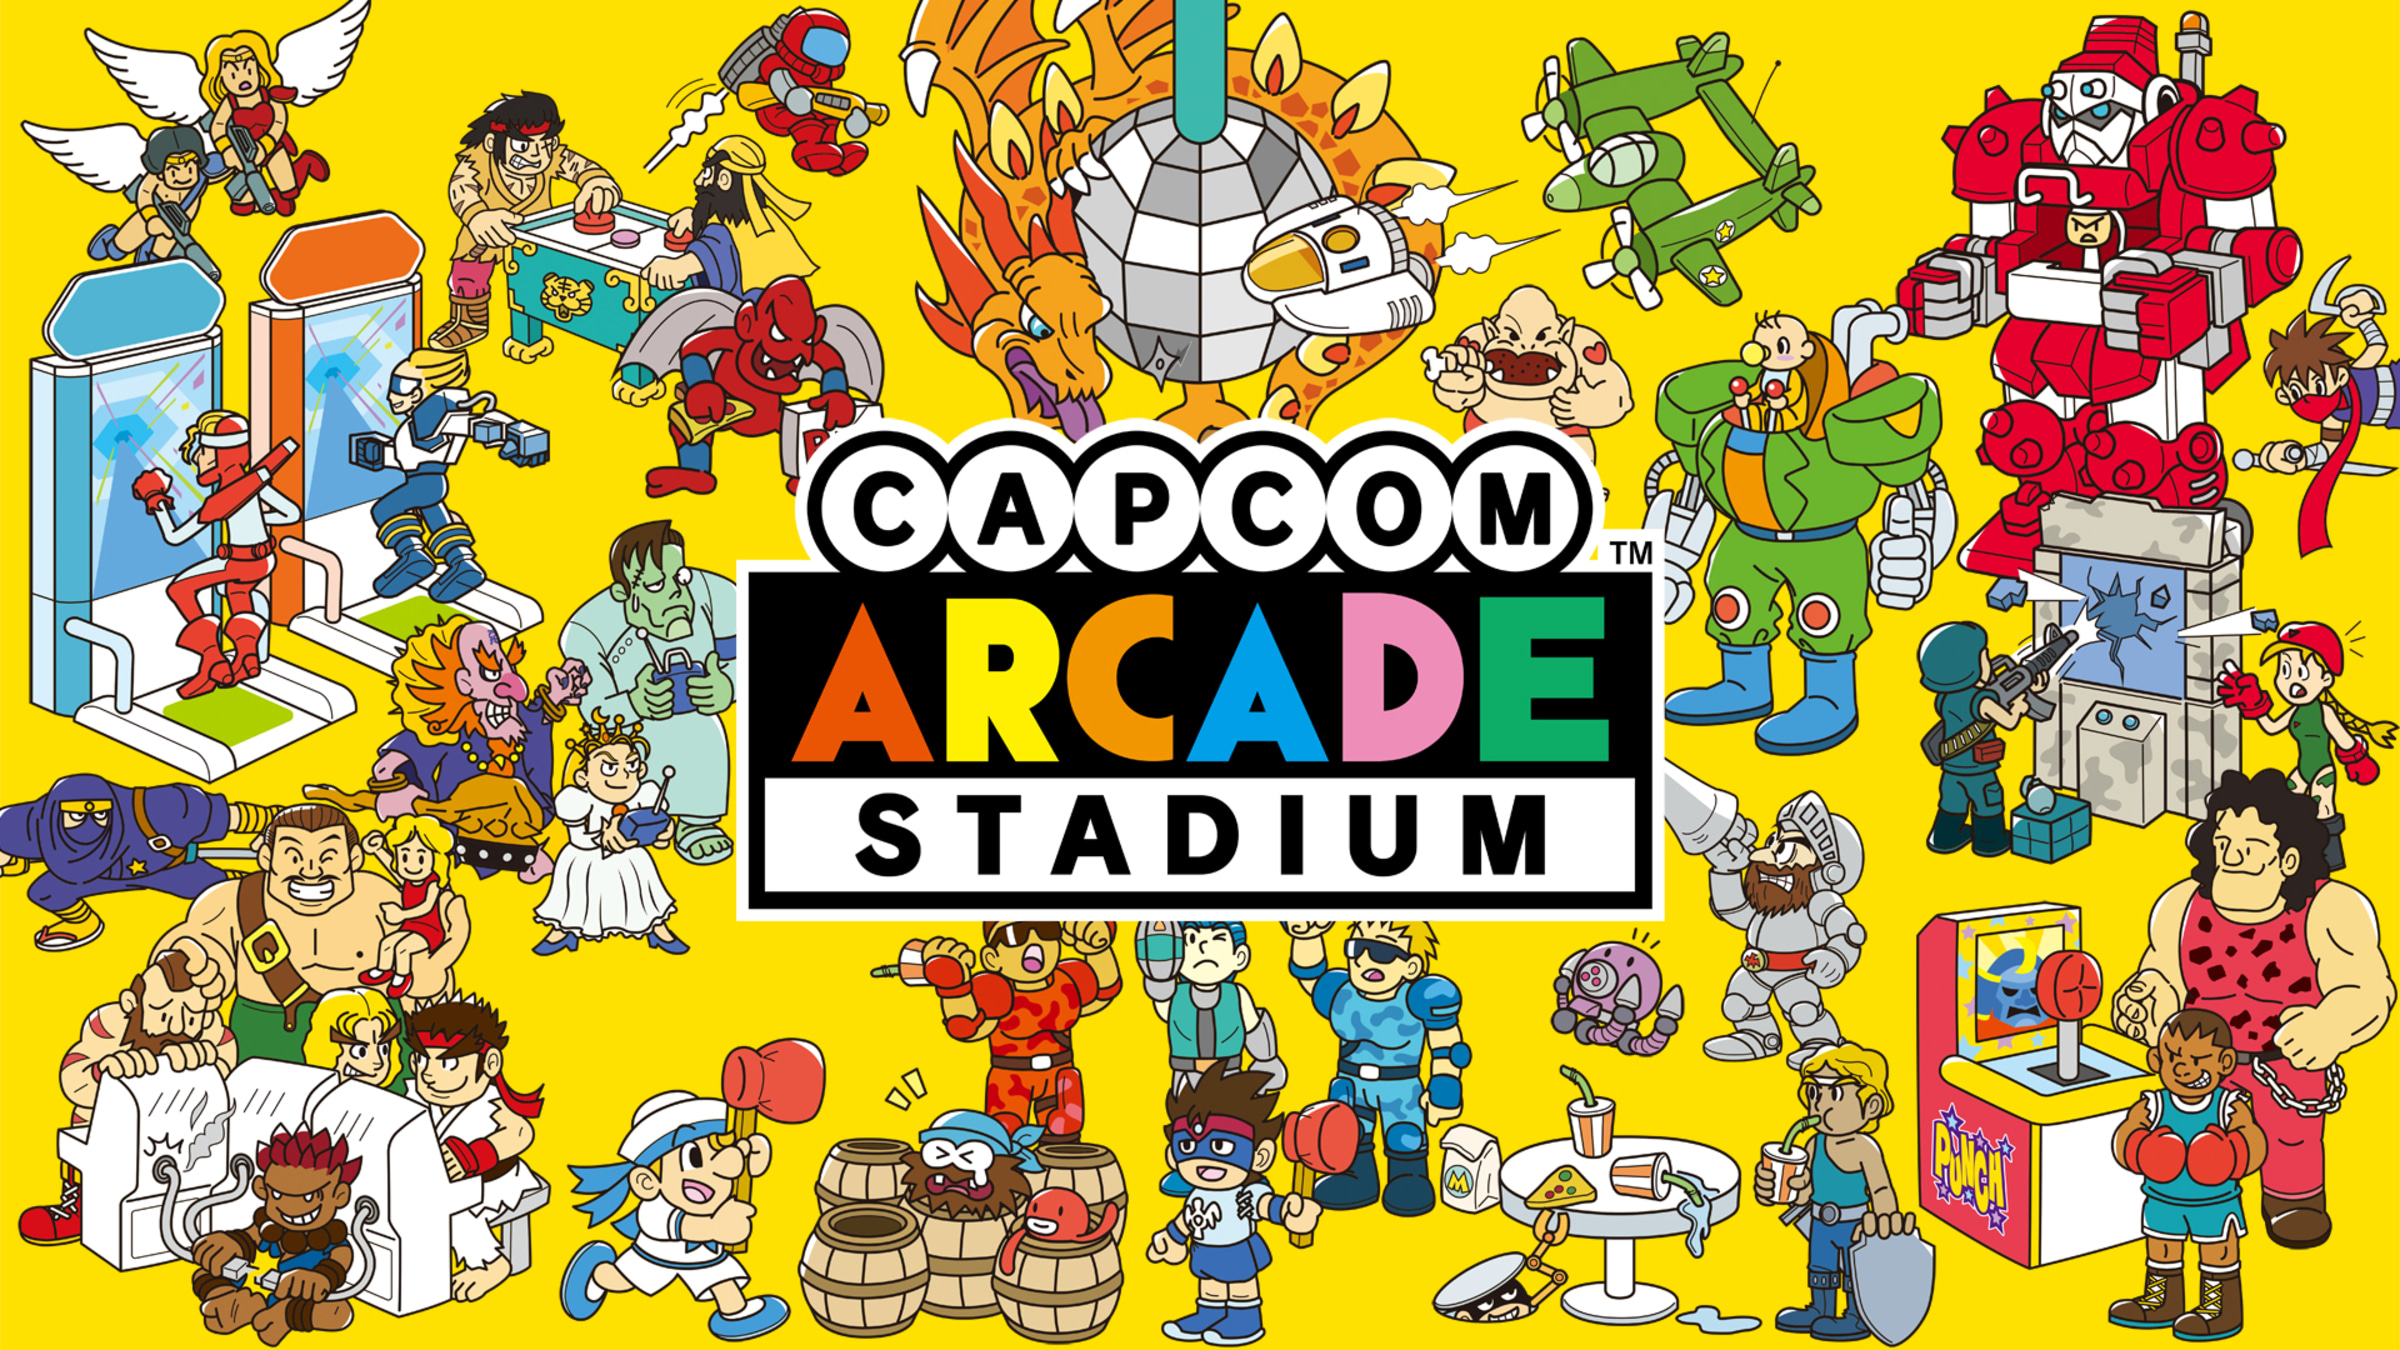 Capcom Arcade Stadium For Nintendo